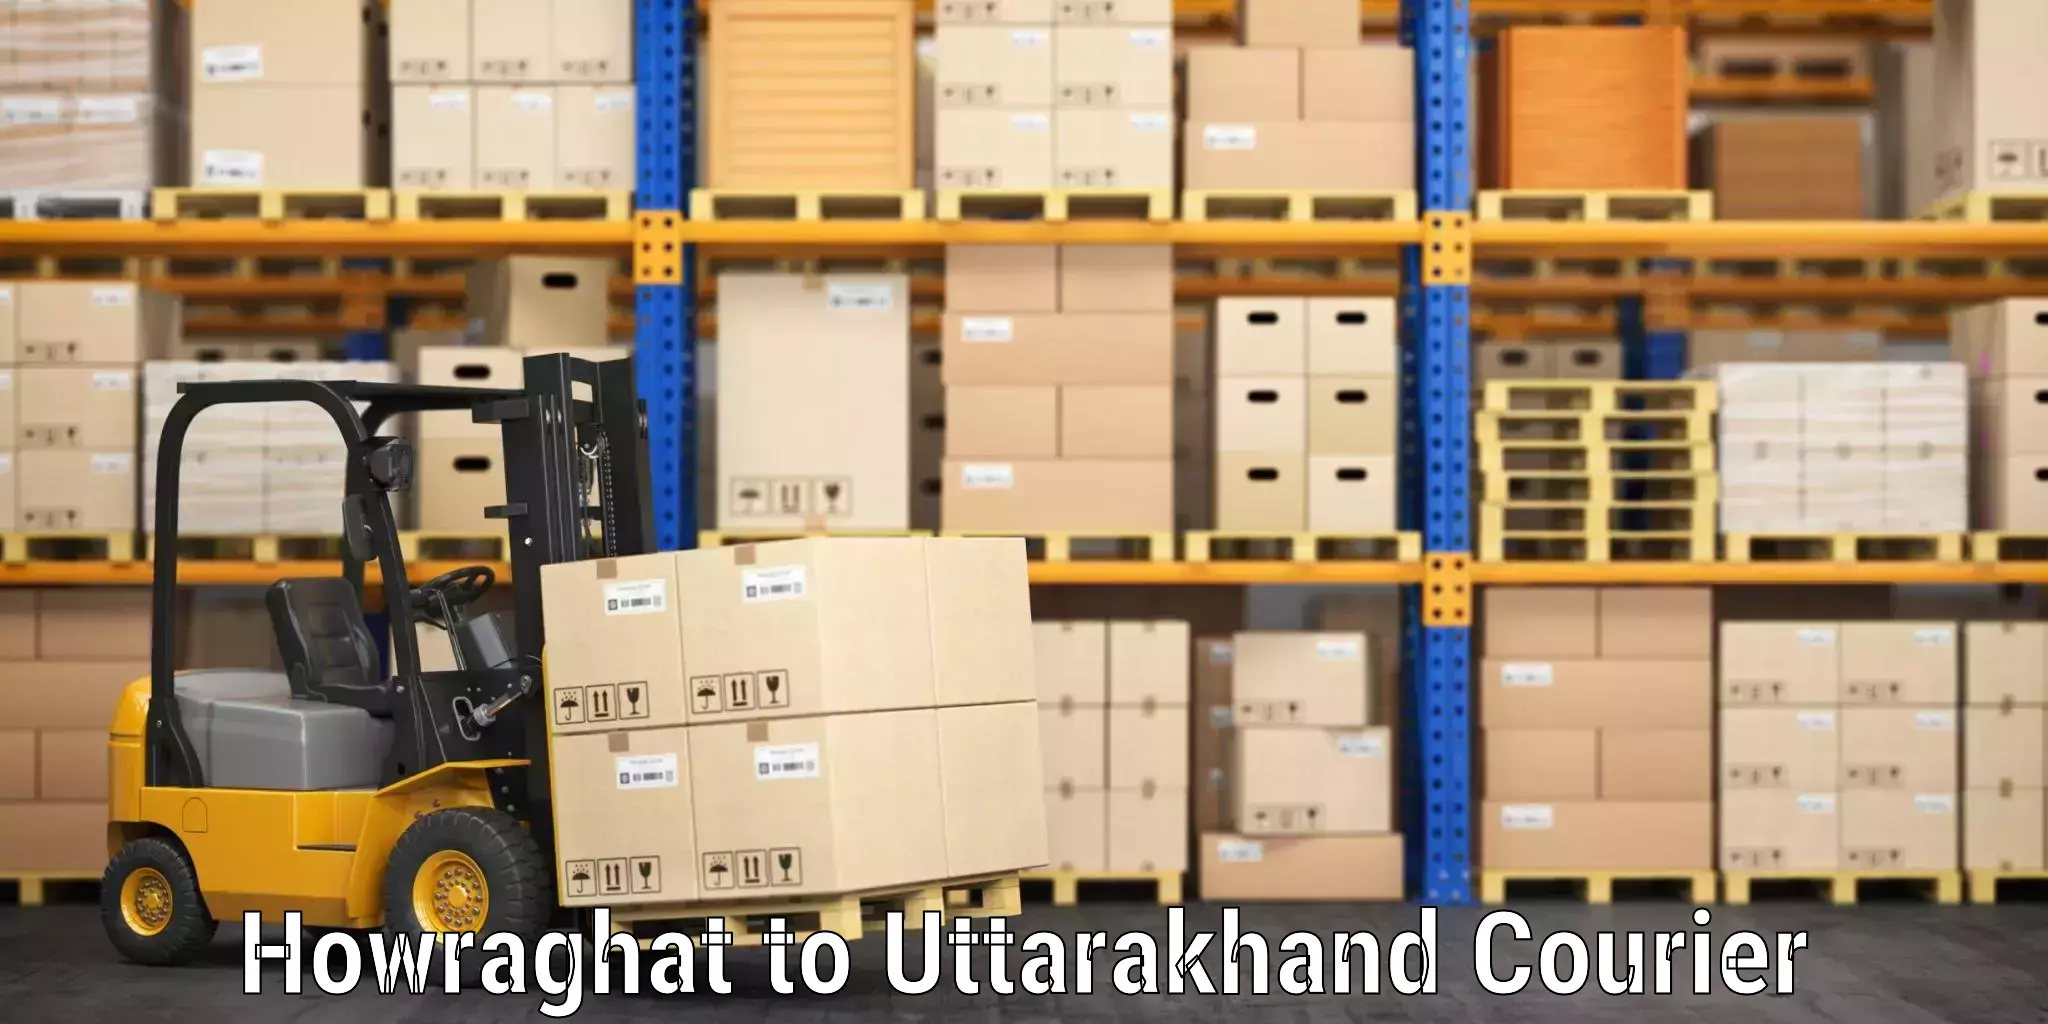 Luggage shipping management Howraghat to Uttarkashi